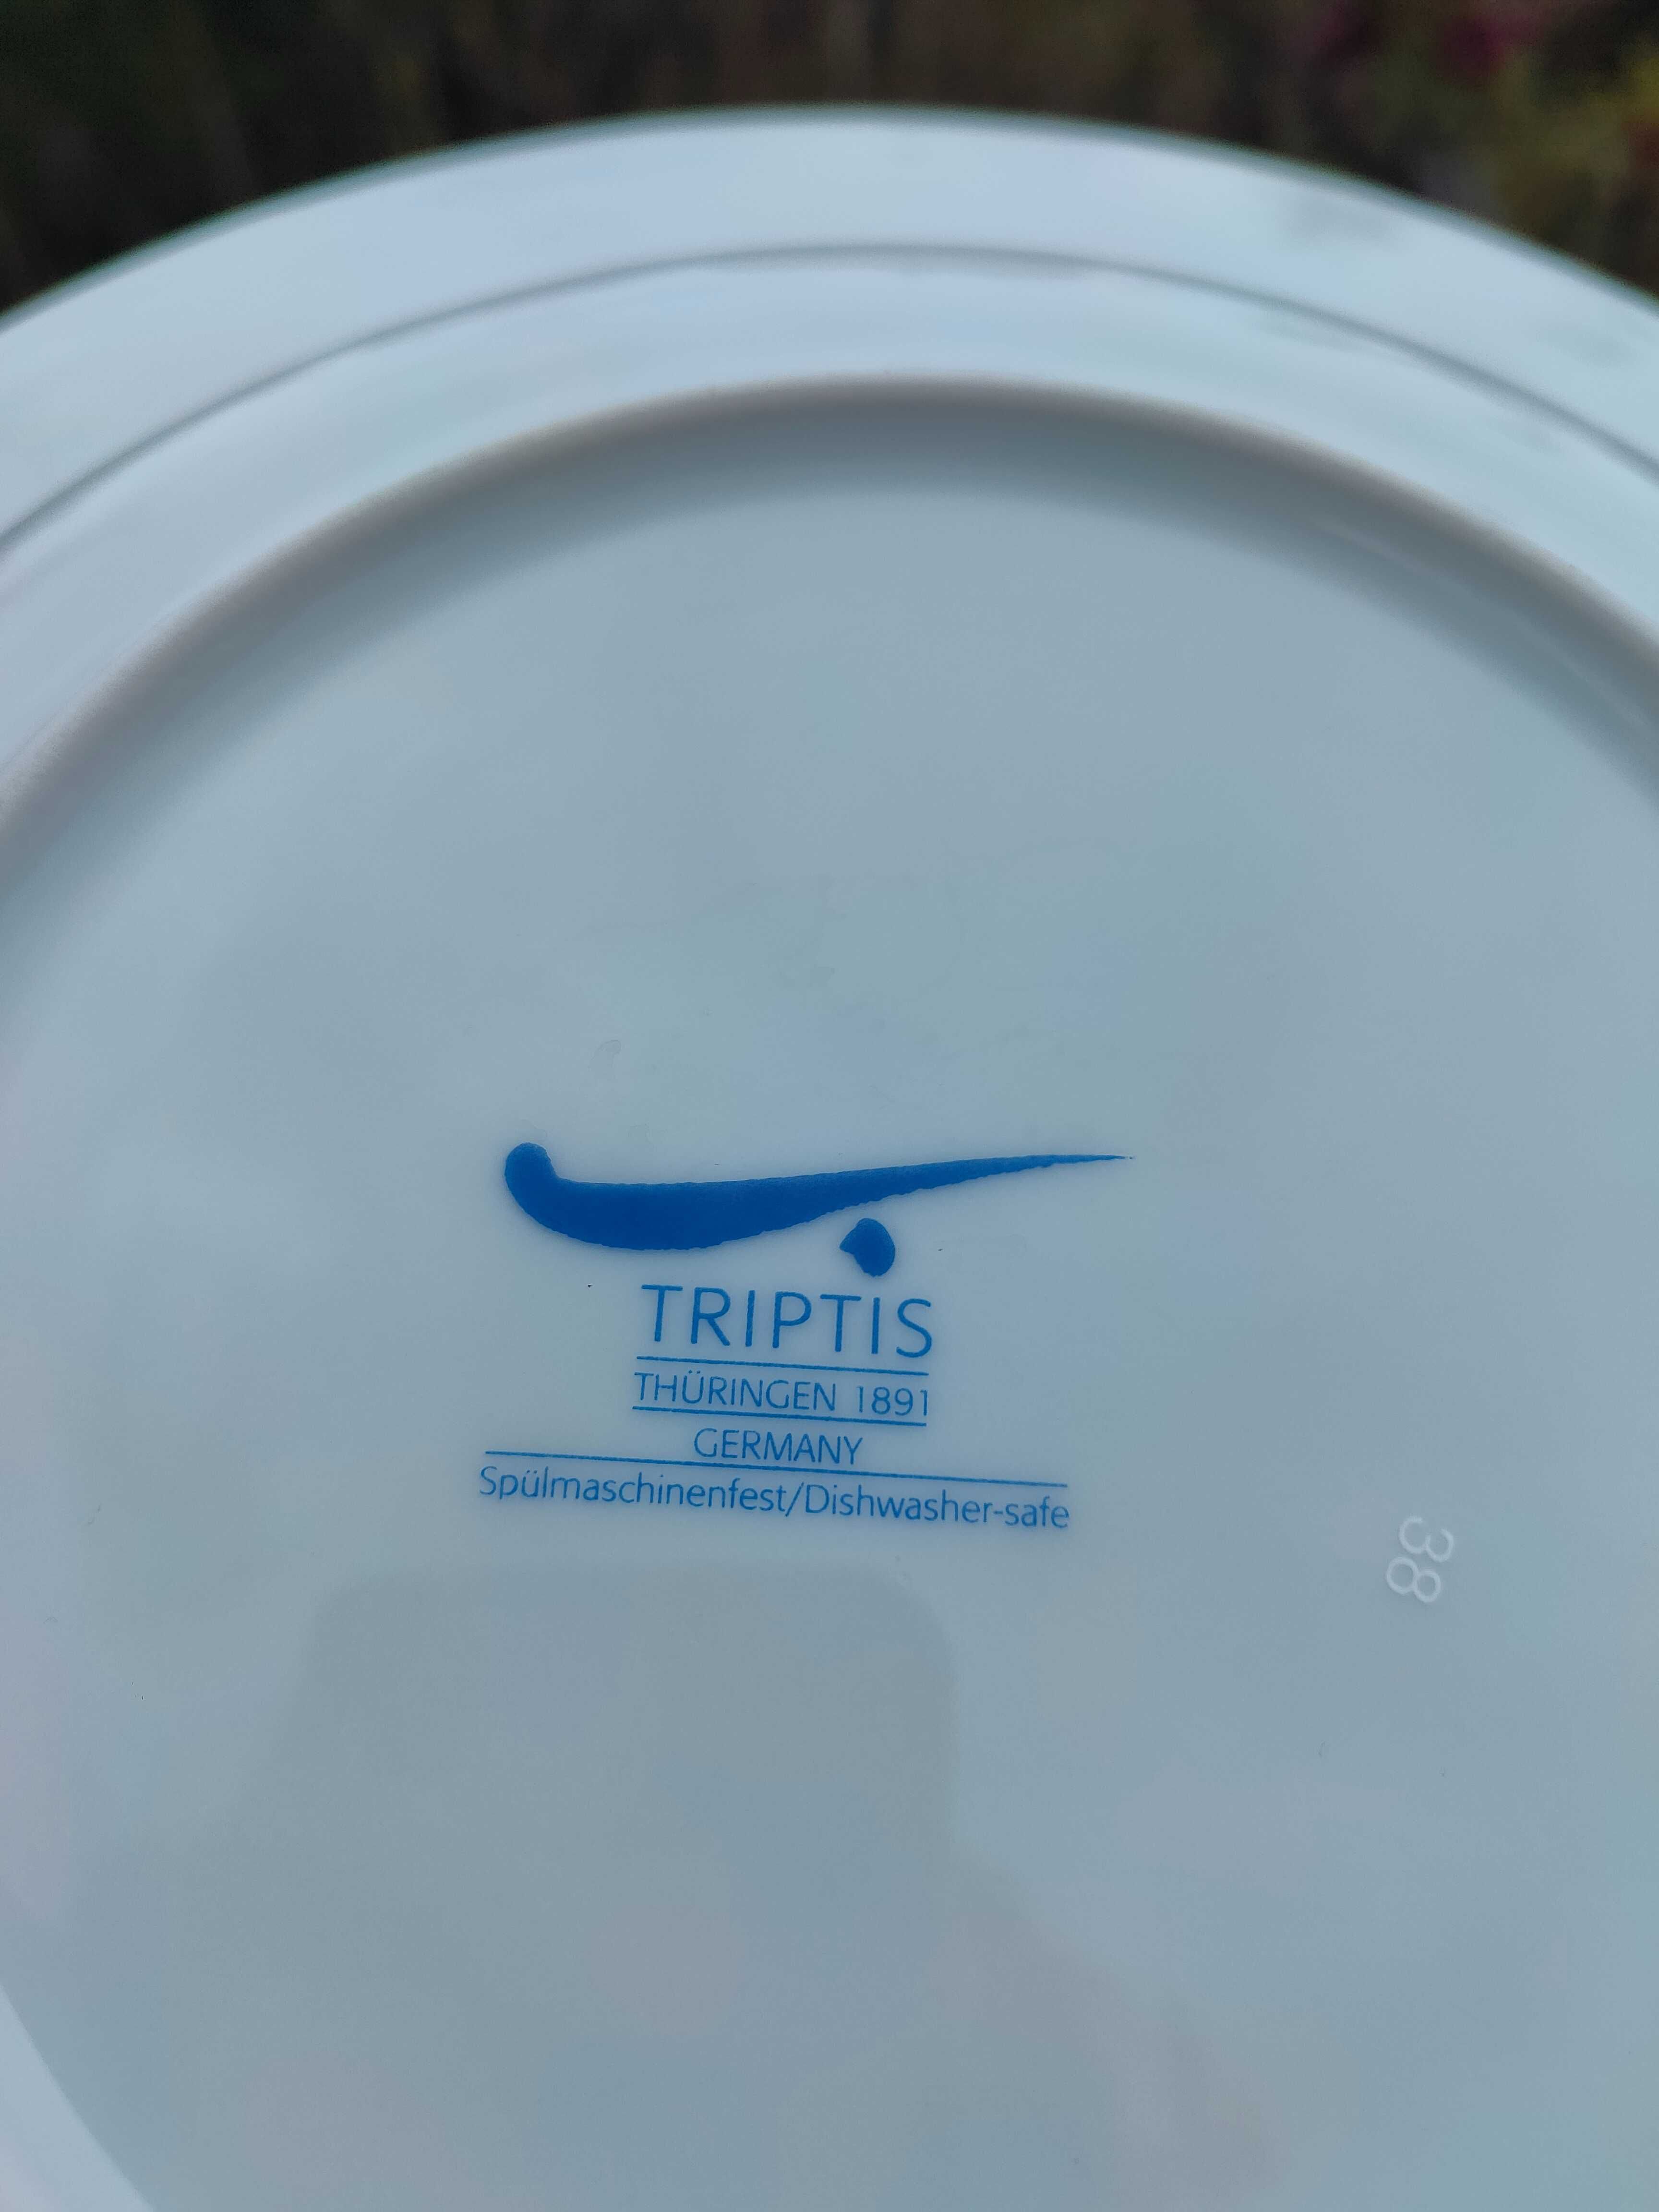 Duży głęboki talerz na dania włoskie - 30 cm - Triptis